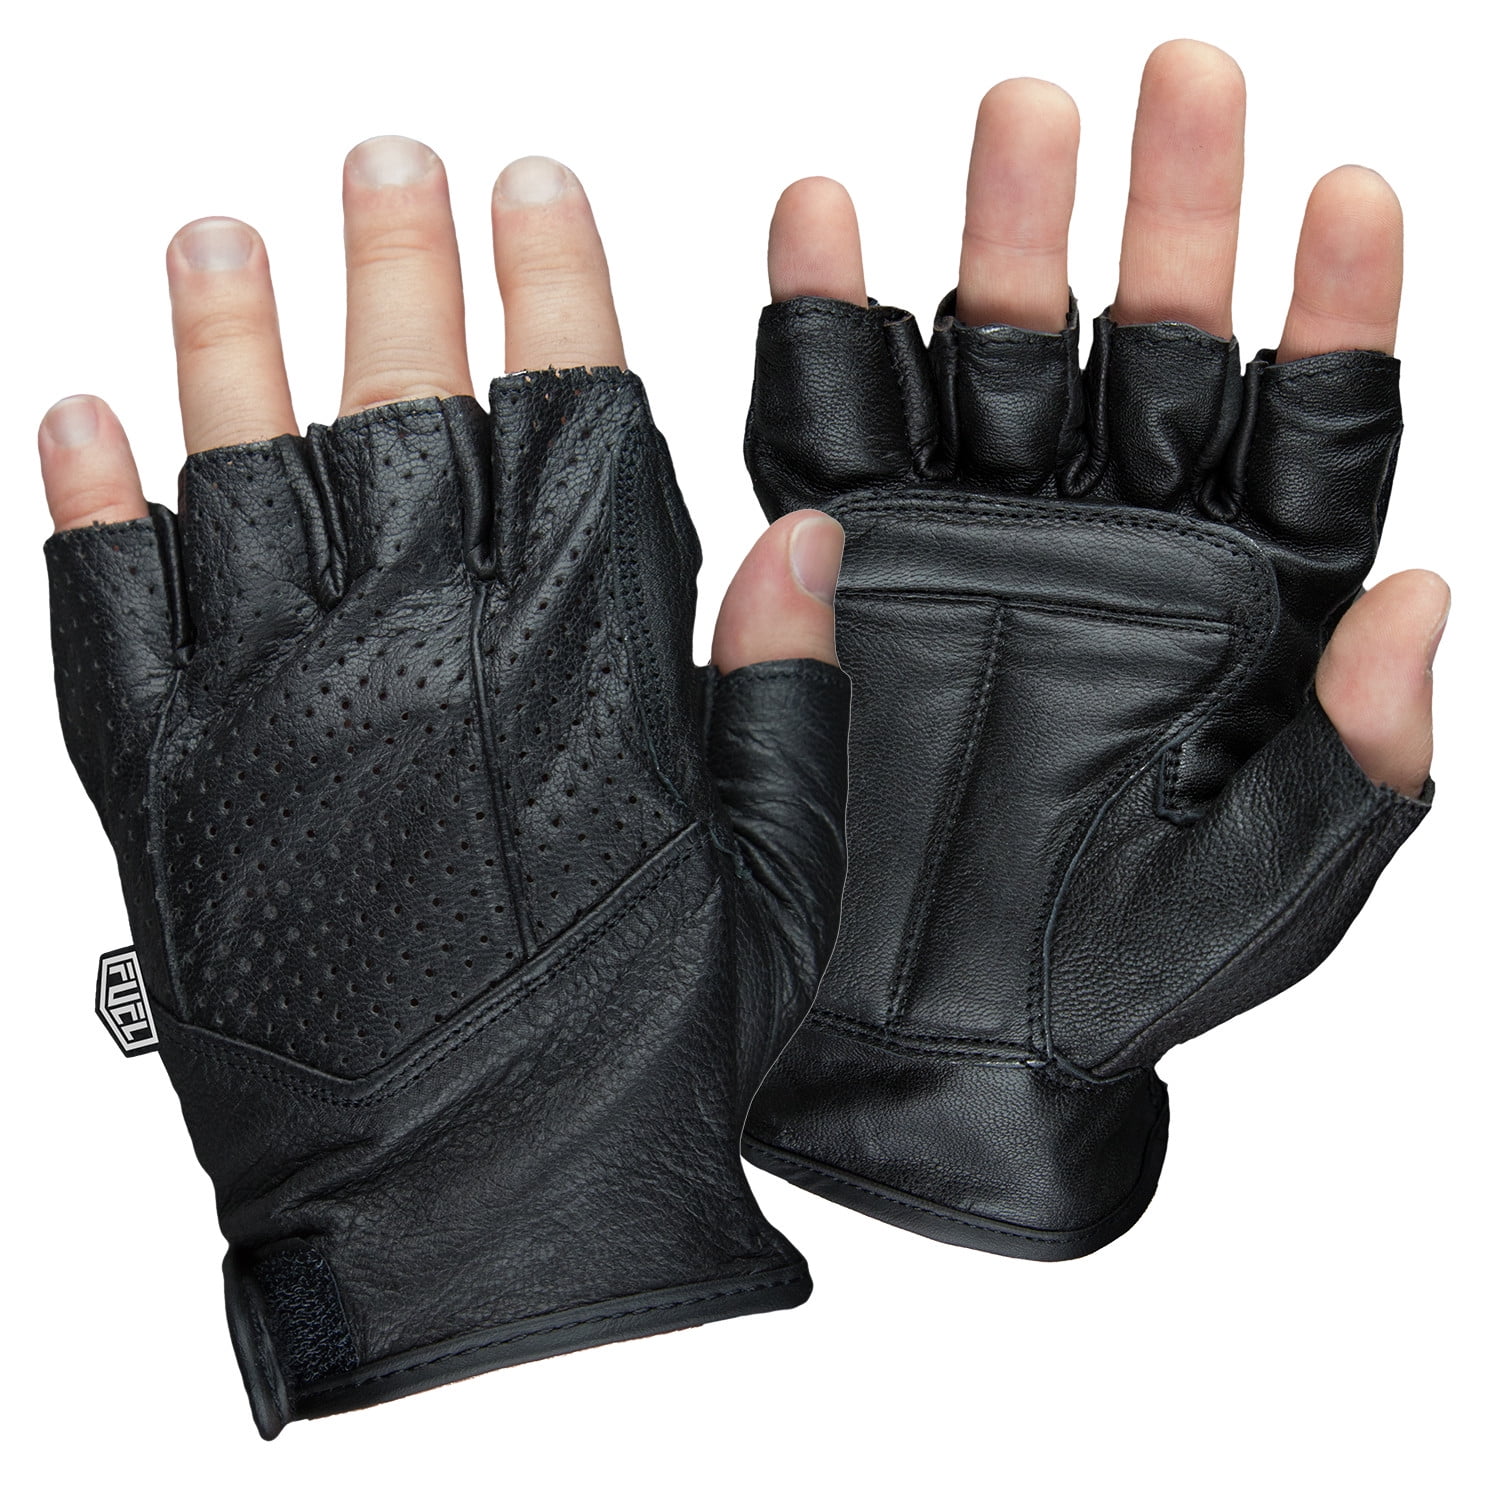 Men's Motorcycle Biker Training Heavy Duty Leather Zipper Back Fingerless gloves 